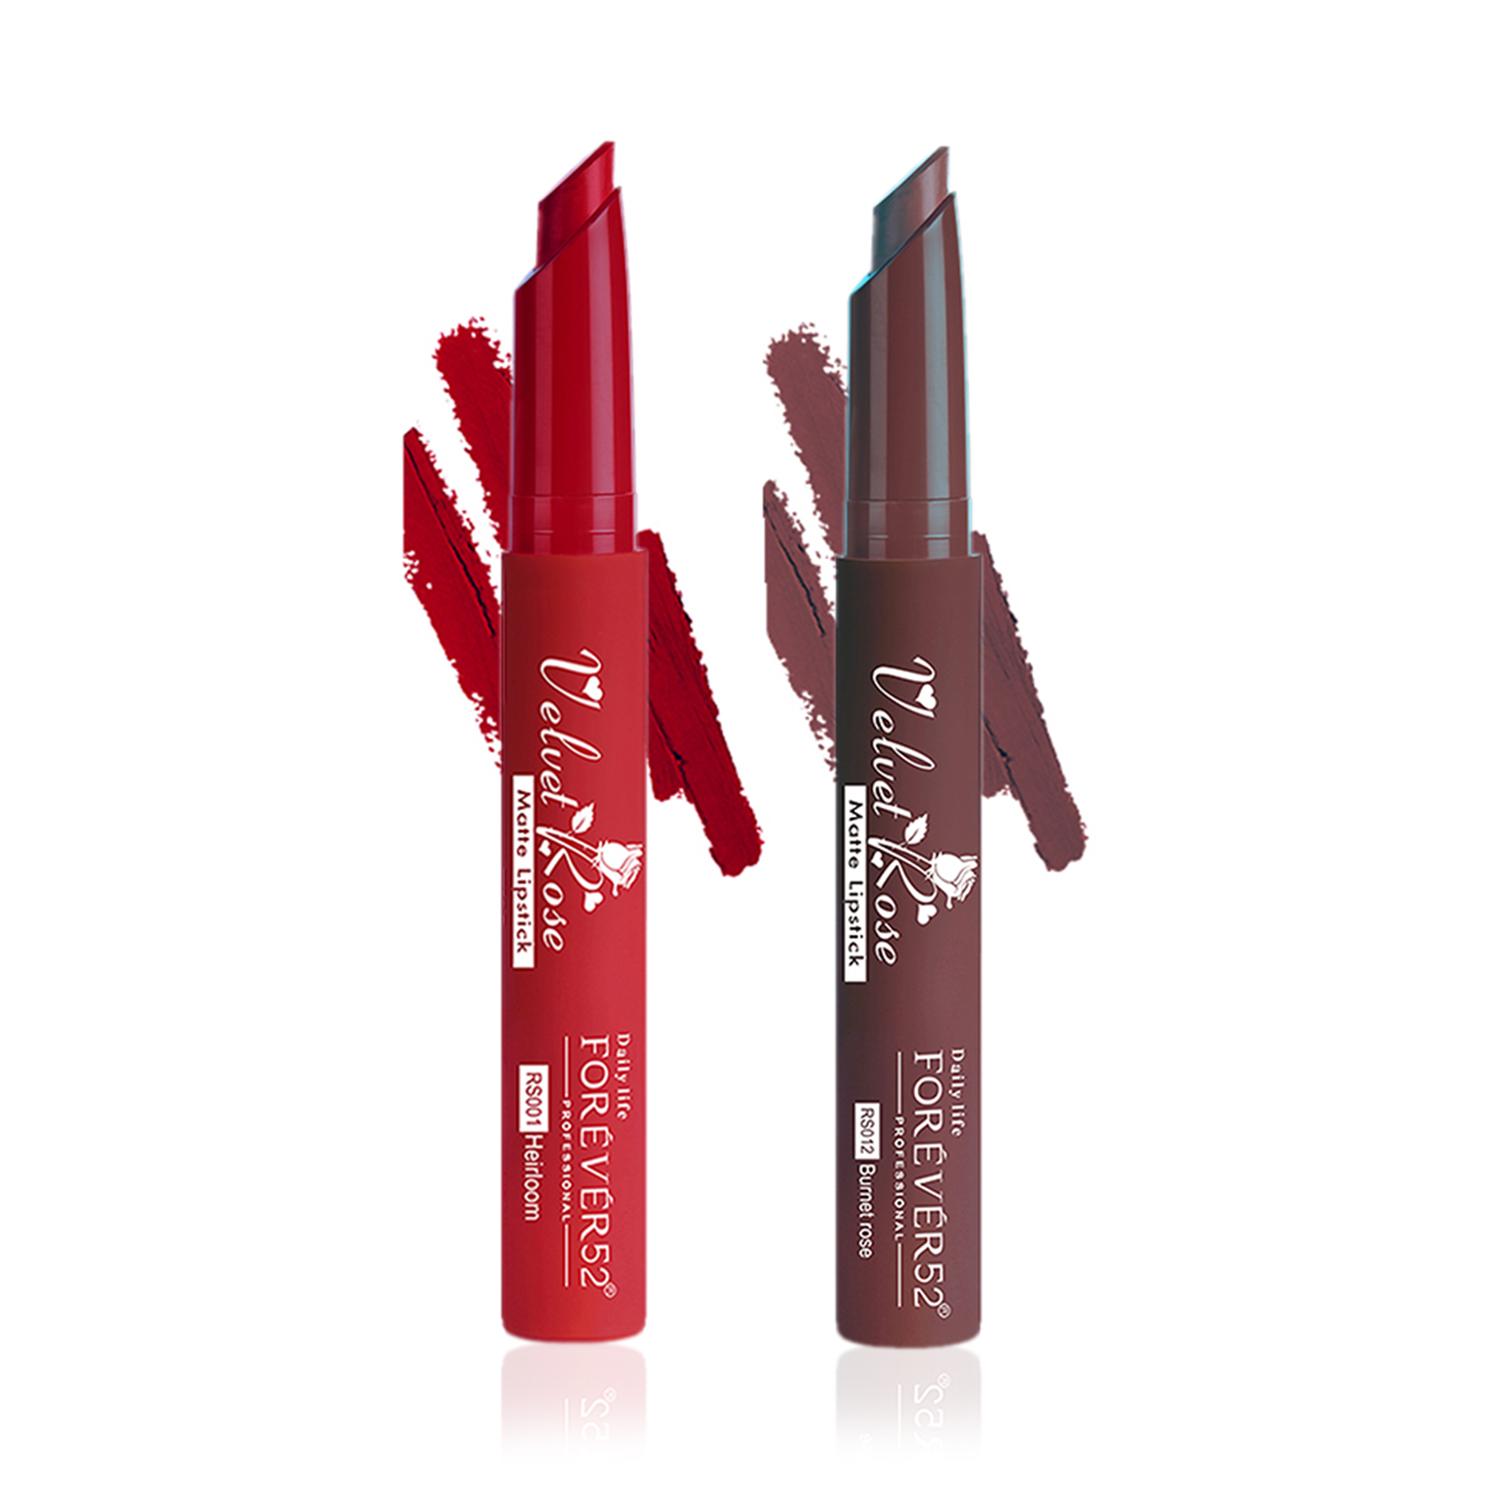 Daily Life Forever52 Velvet Rose Matte Lipstick Set of 2 Crayons (Heirloom,Burnet Rose) Combo